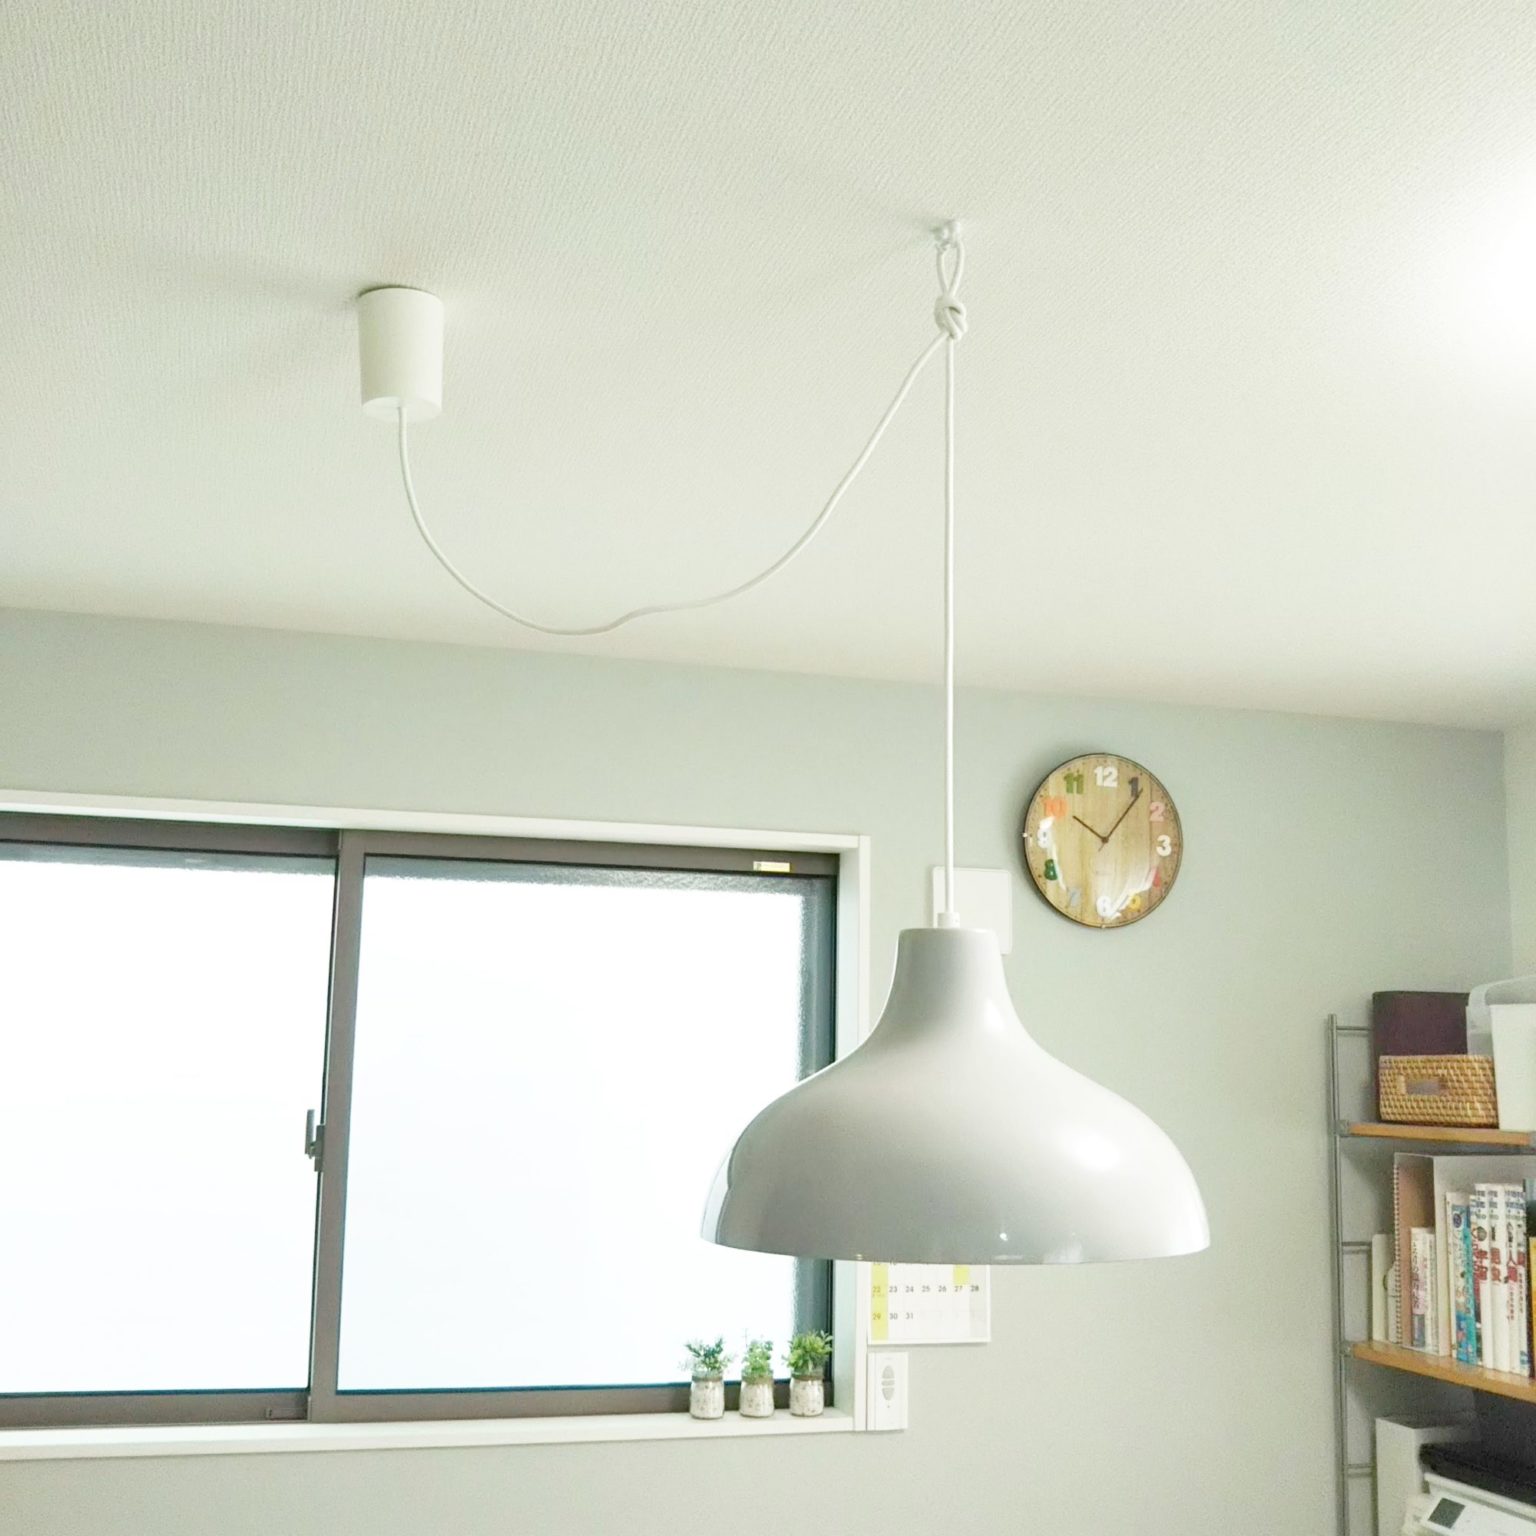 天井の「照明位置」を変更！梁がなくても簡単にできた | 片付けブログ「まいCleanLife」暮らしのいろいろ